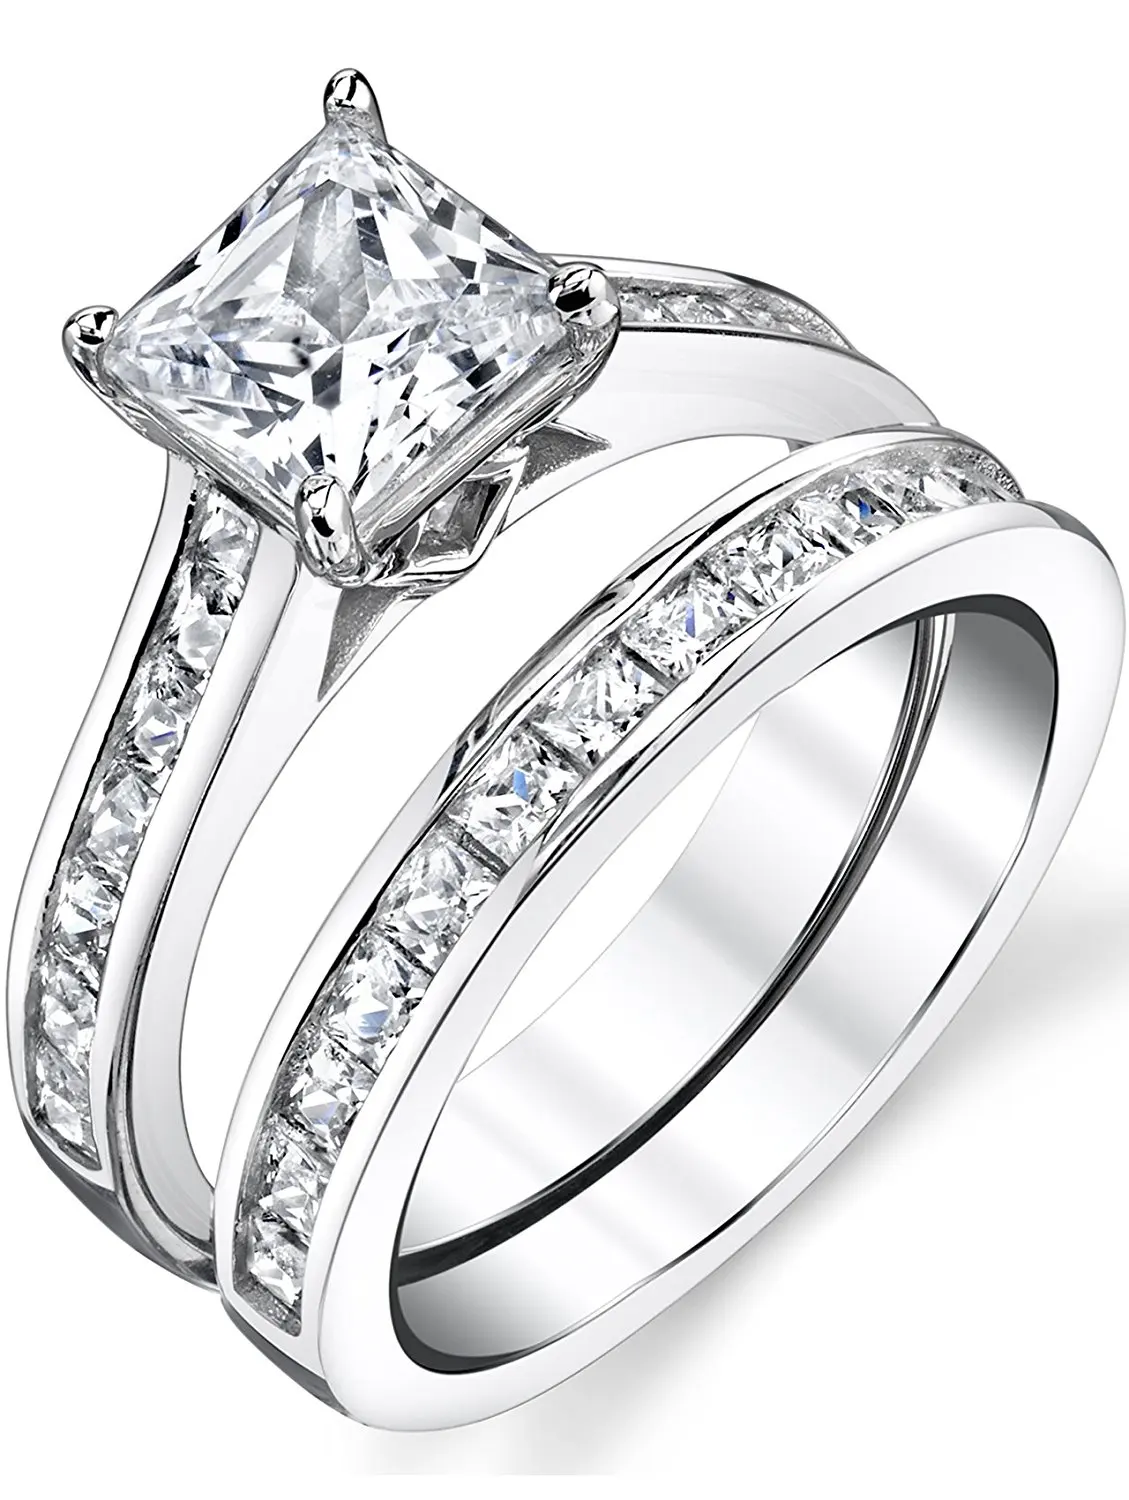 Cheap Princess Cut Bridal Ring Sets Find Princess Cut Bridal Ring